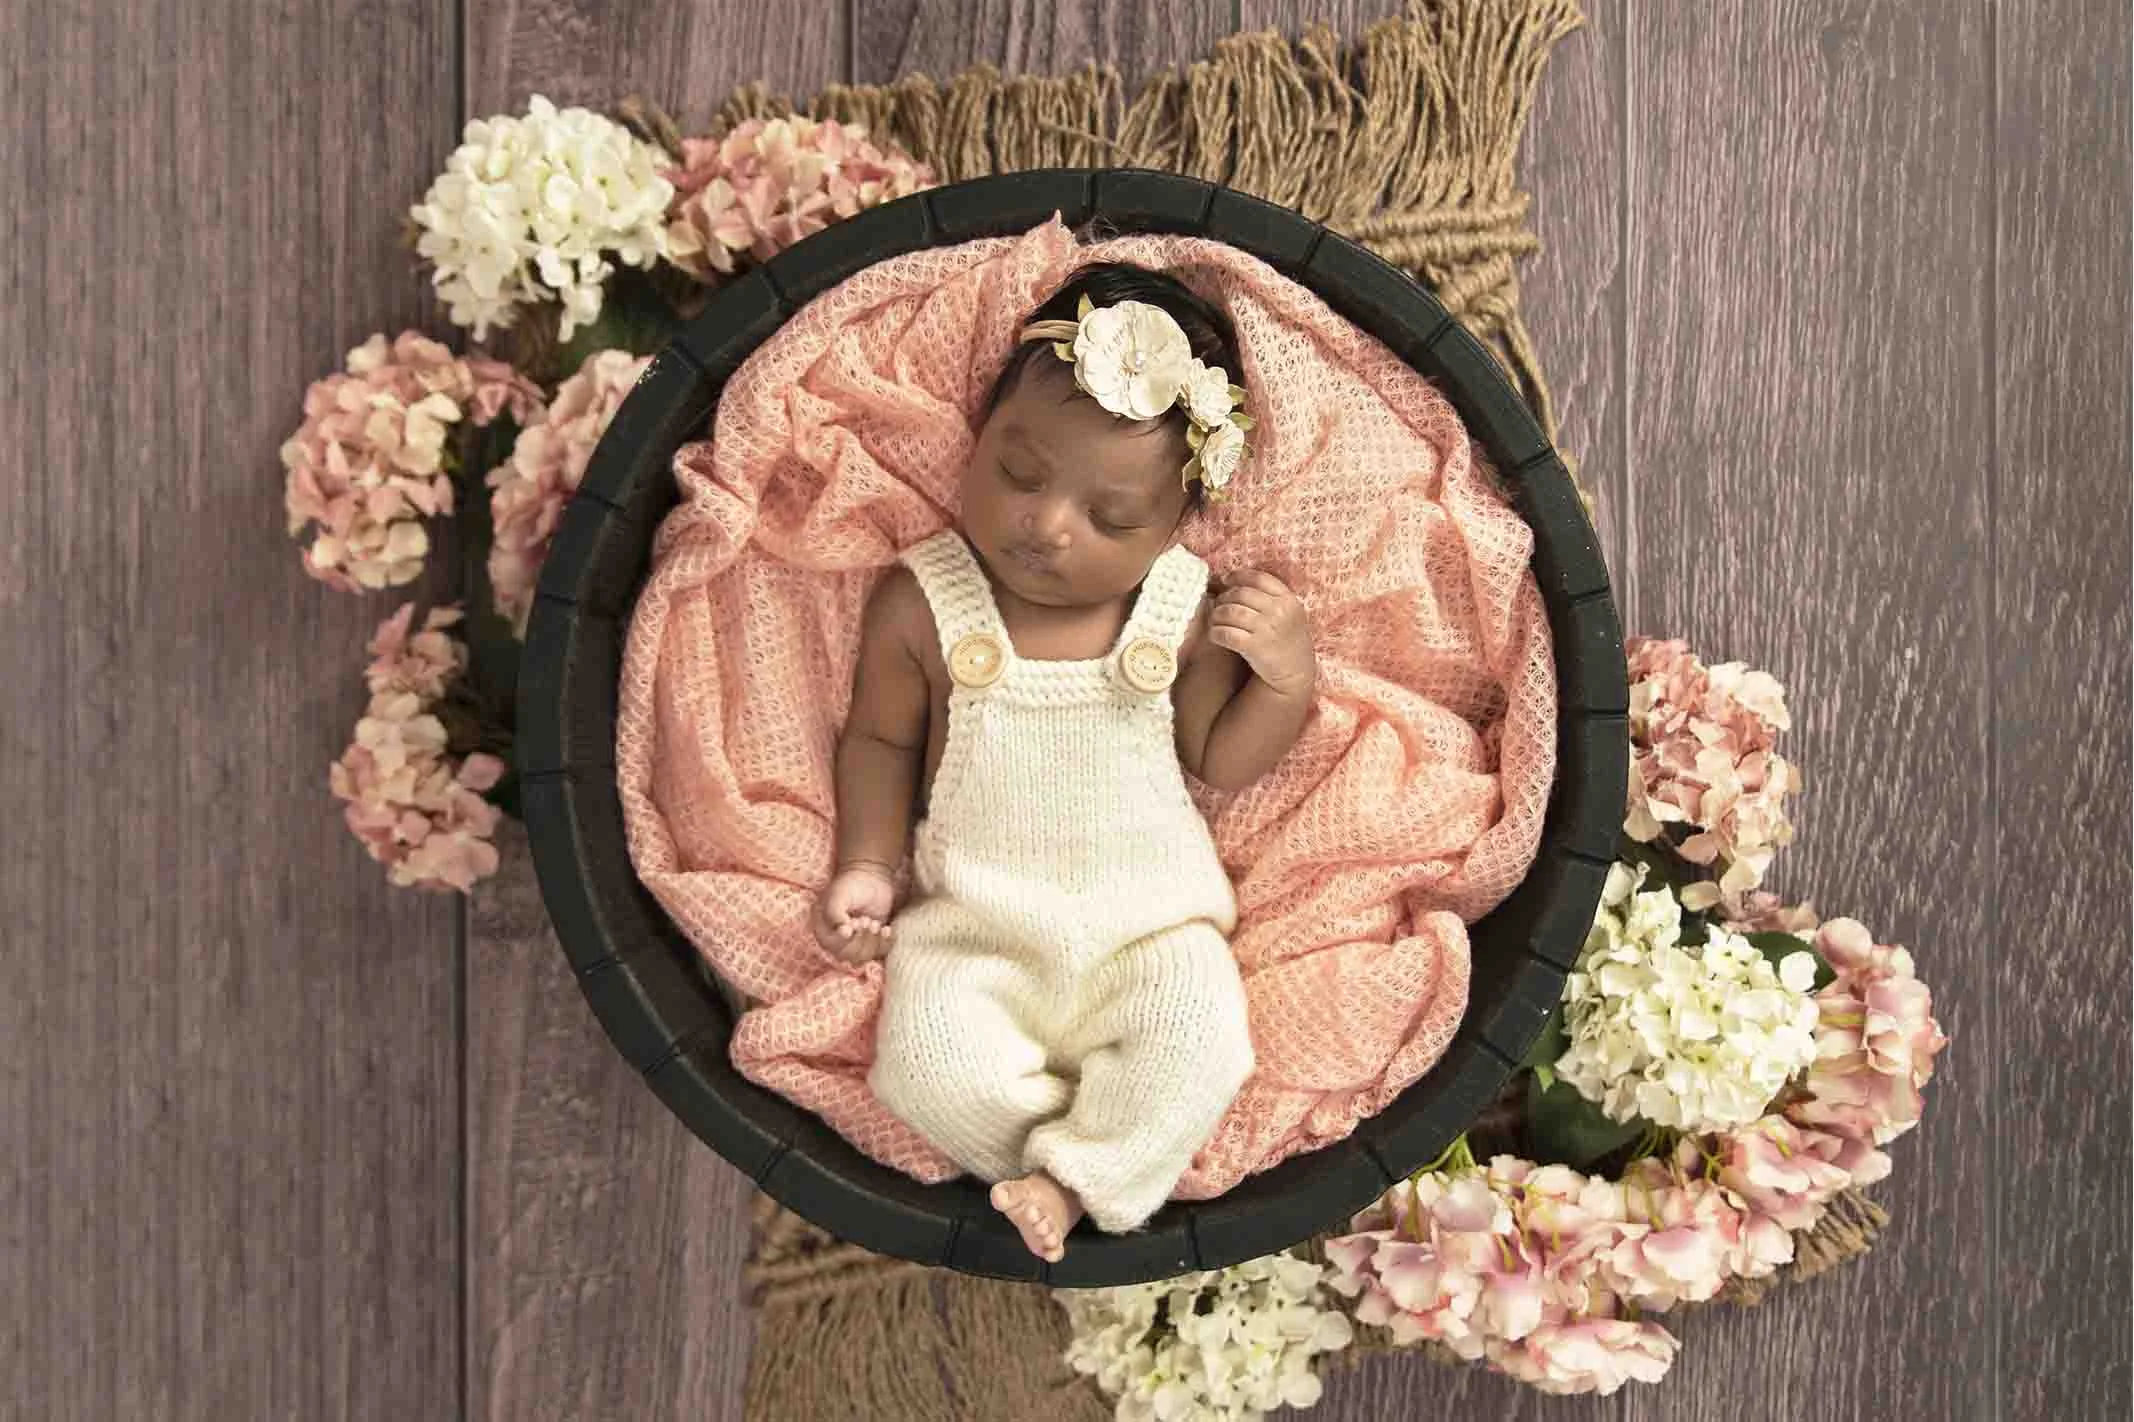 newborn in pink basket